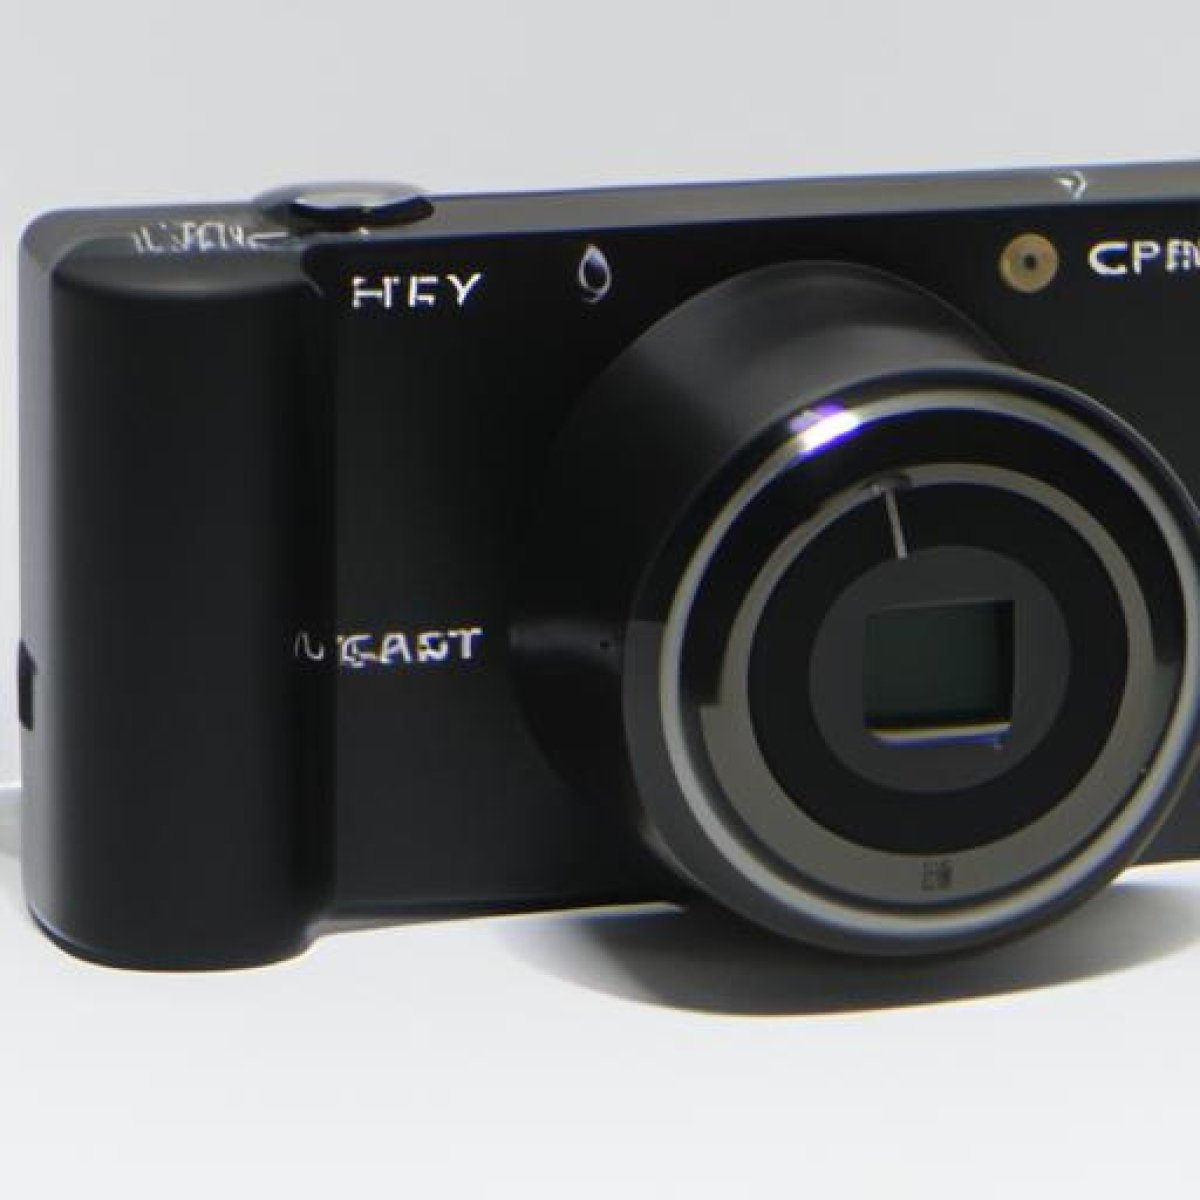 Sony cyber shot dsc wx500 digital camera